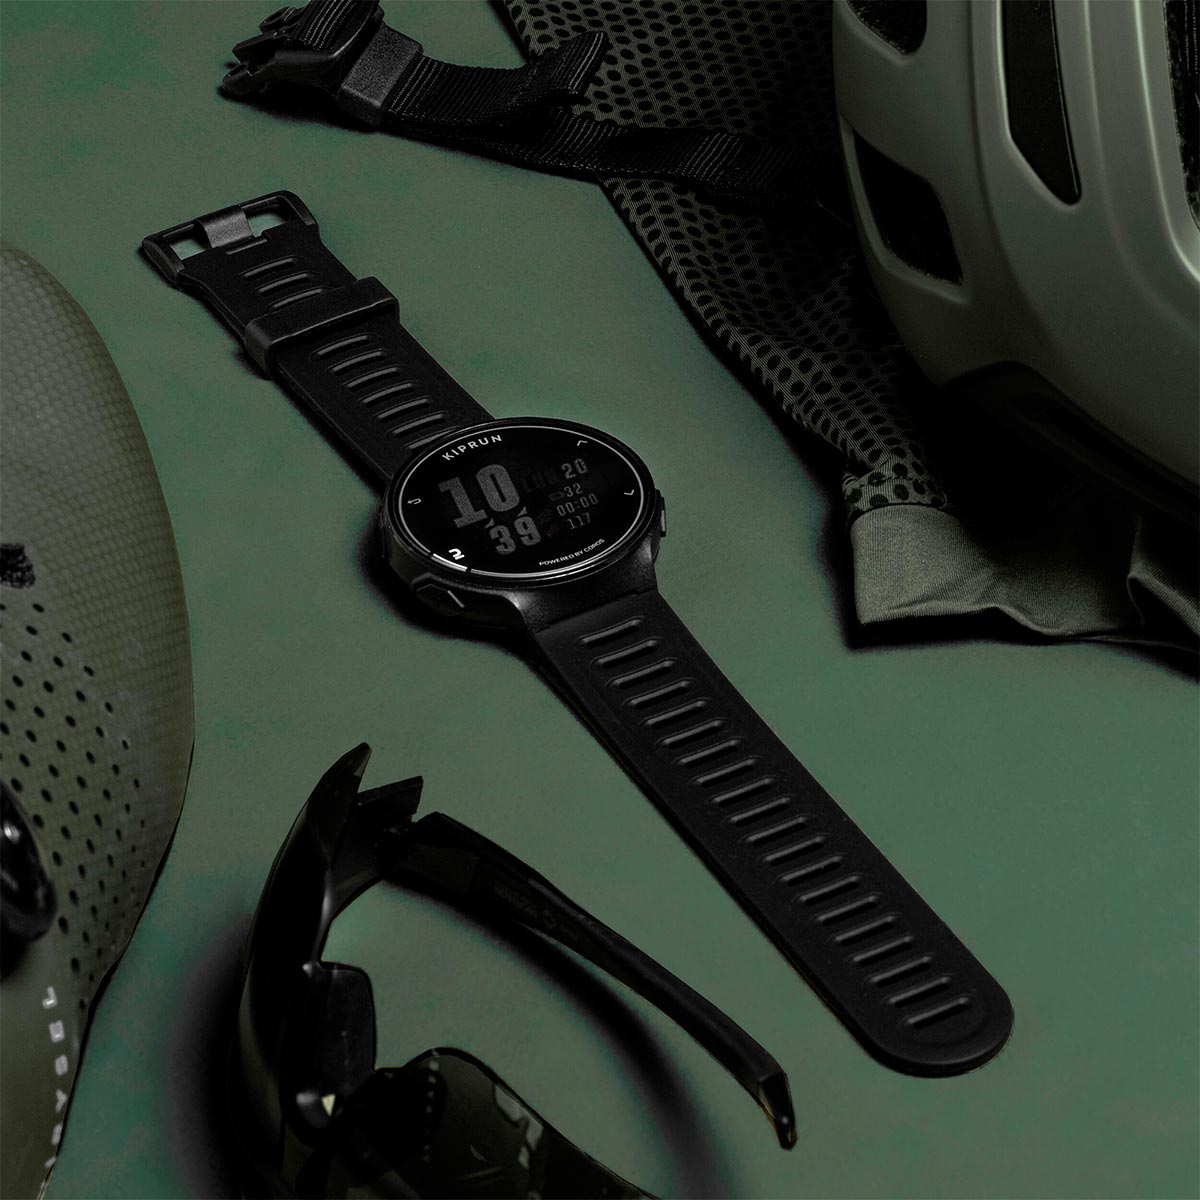 Kiprun 500 By Coros, el smartwatch con GPS de Decathlon que ofrece funciones avanzadas a precio imbatible